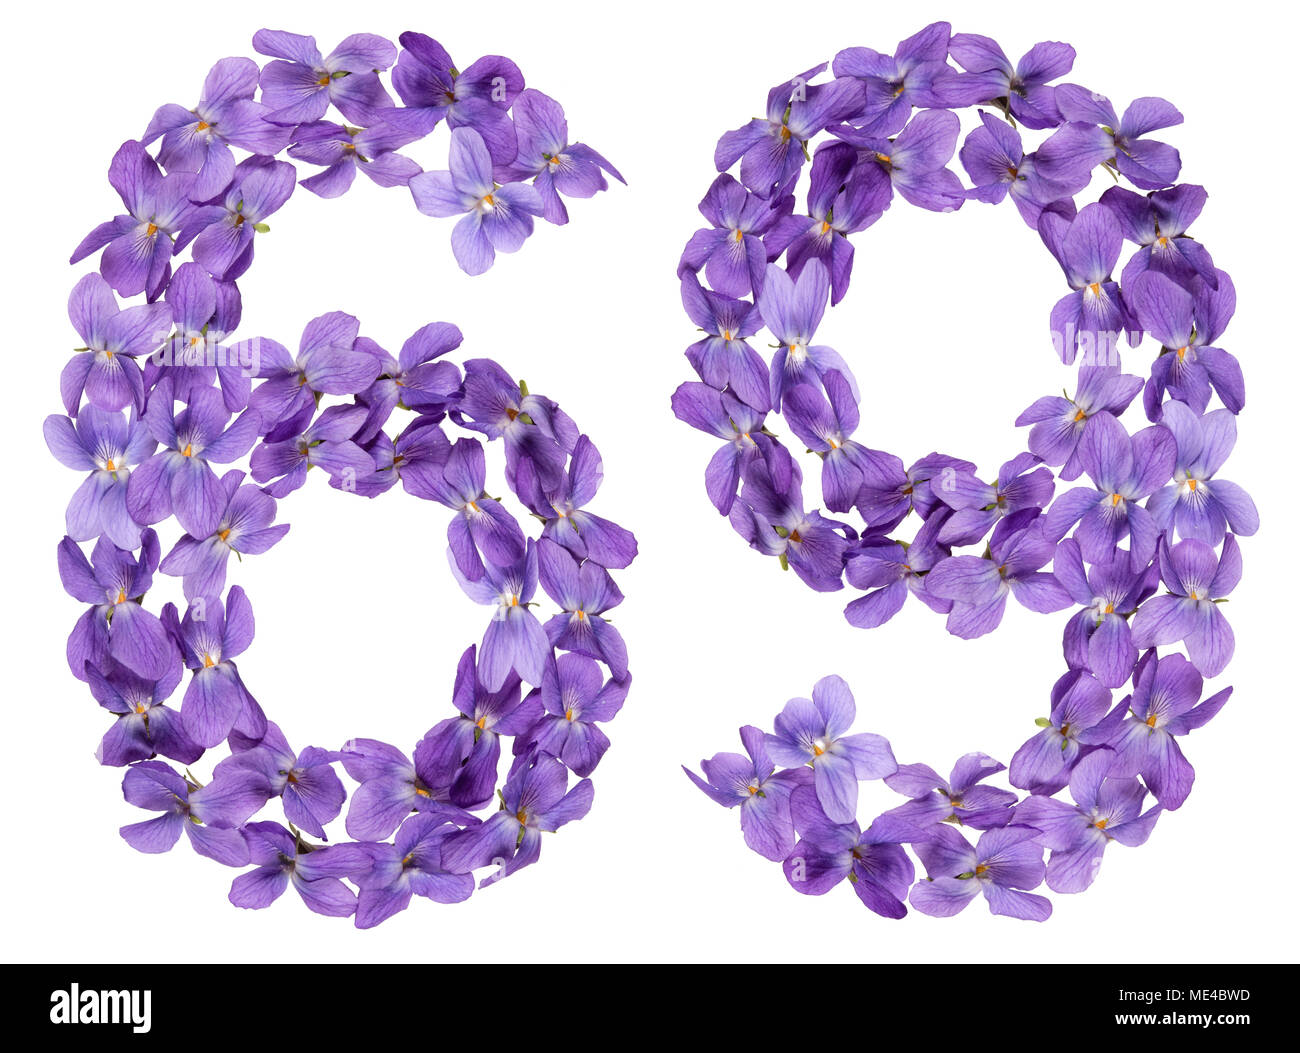 Numero arabo 69, sessanta nove, dai fiori di viola, isolato su sfondo bianco Foto Stock